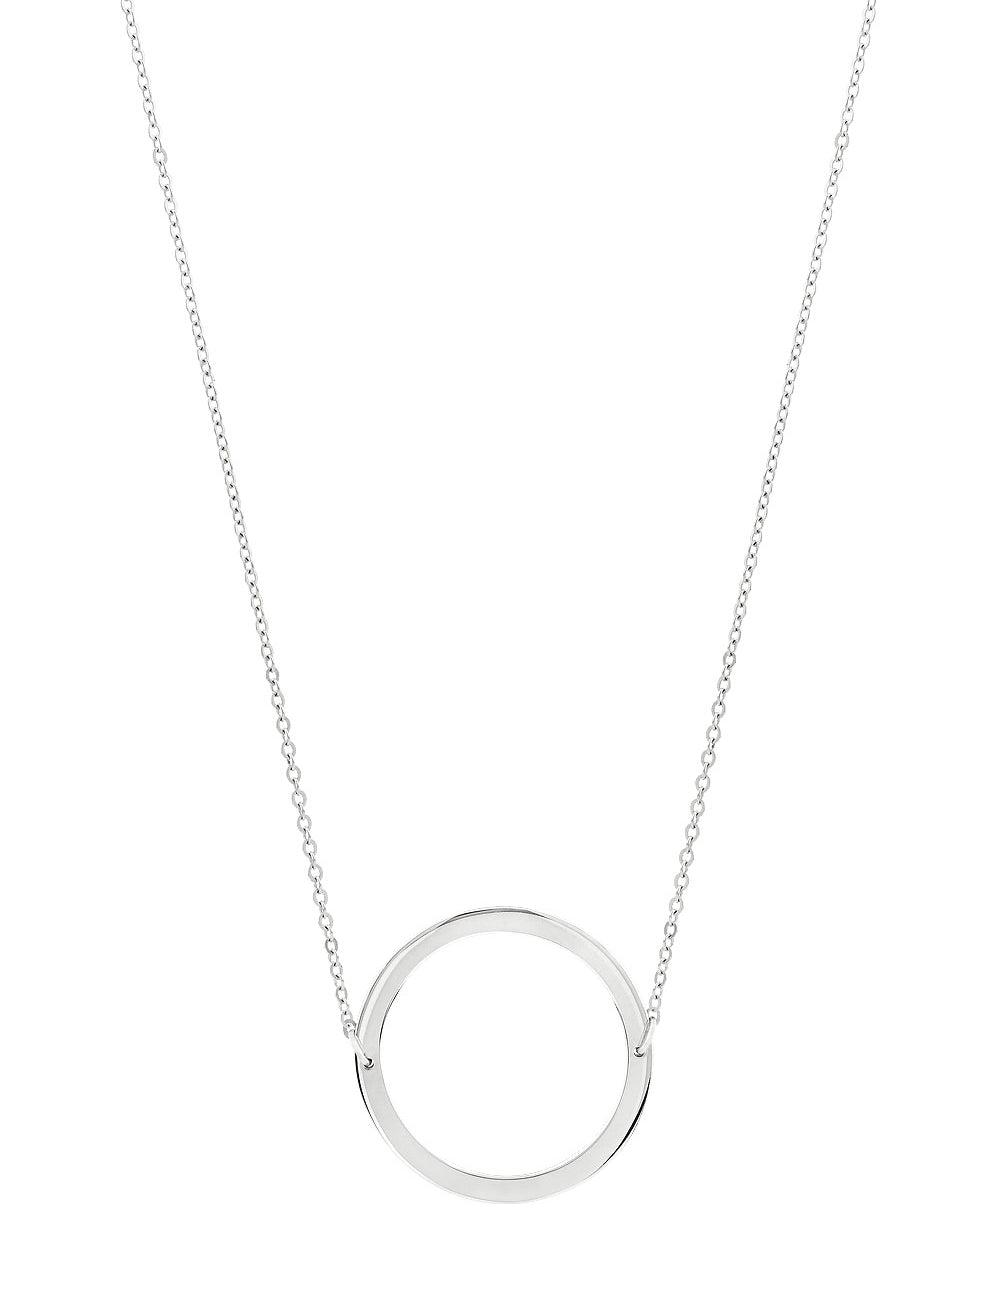 Necklace Circle - Sophie Simone Designs